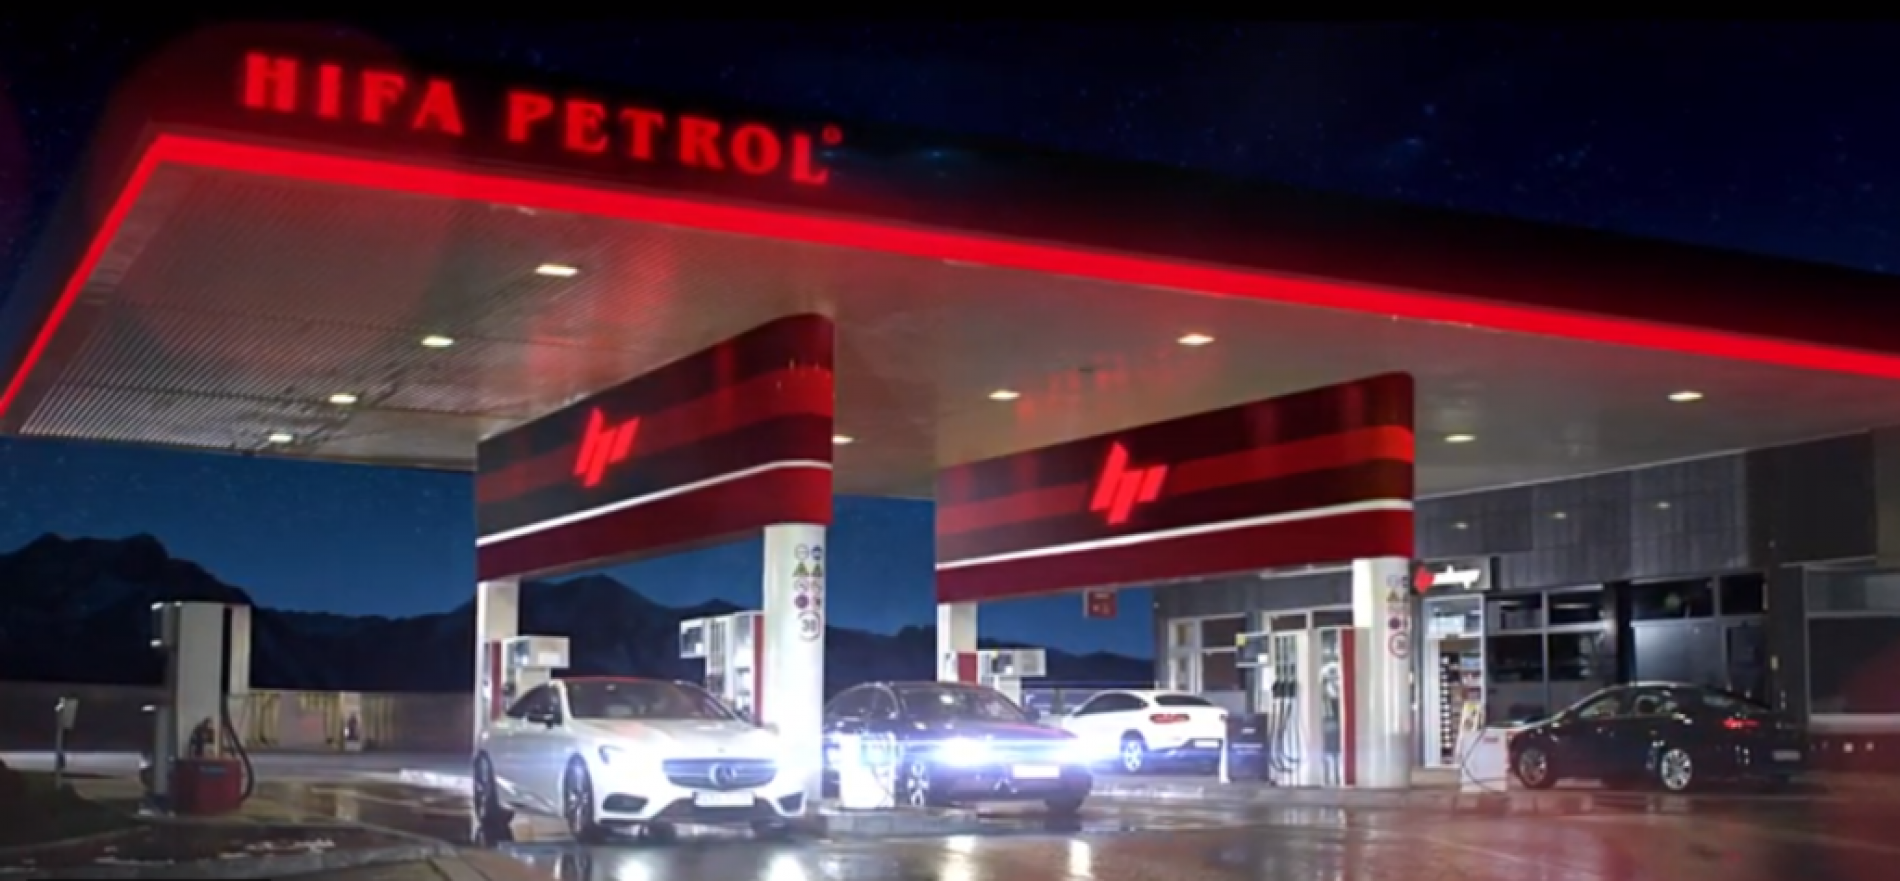 Hifa Petrol u 2019. ostvarila najveći rast od postanka kompanije